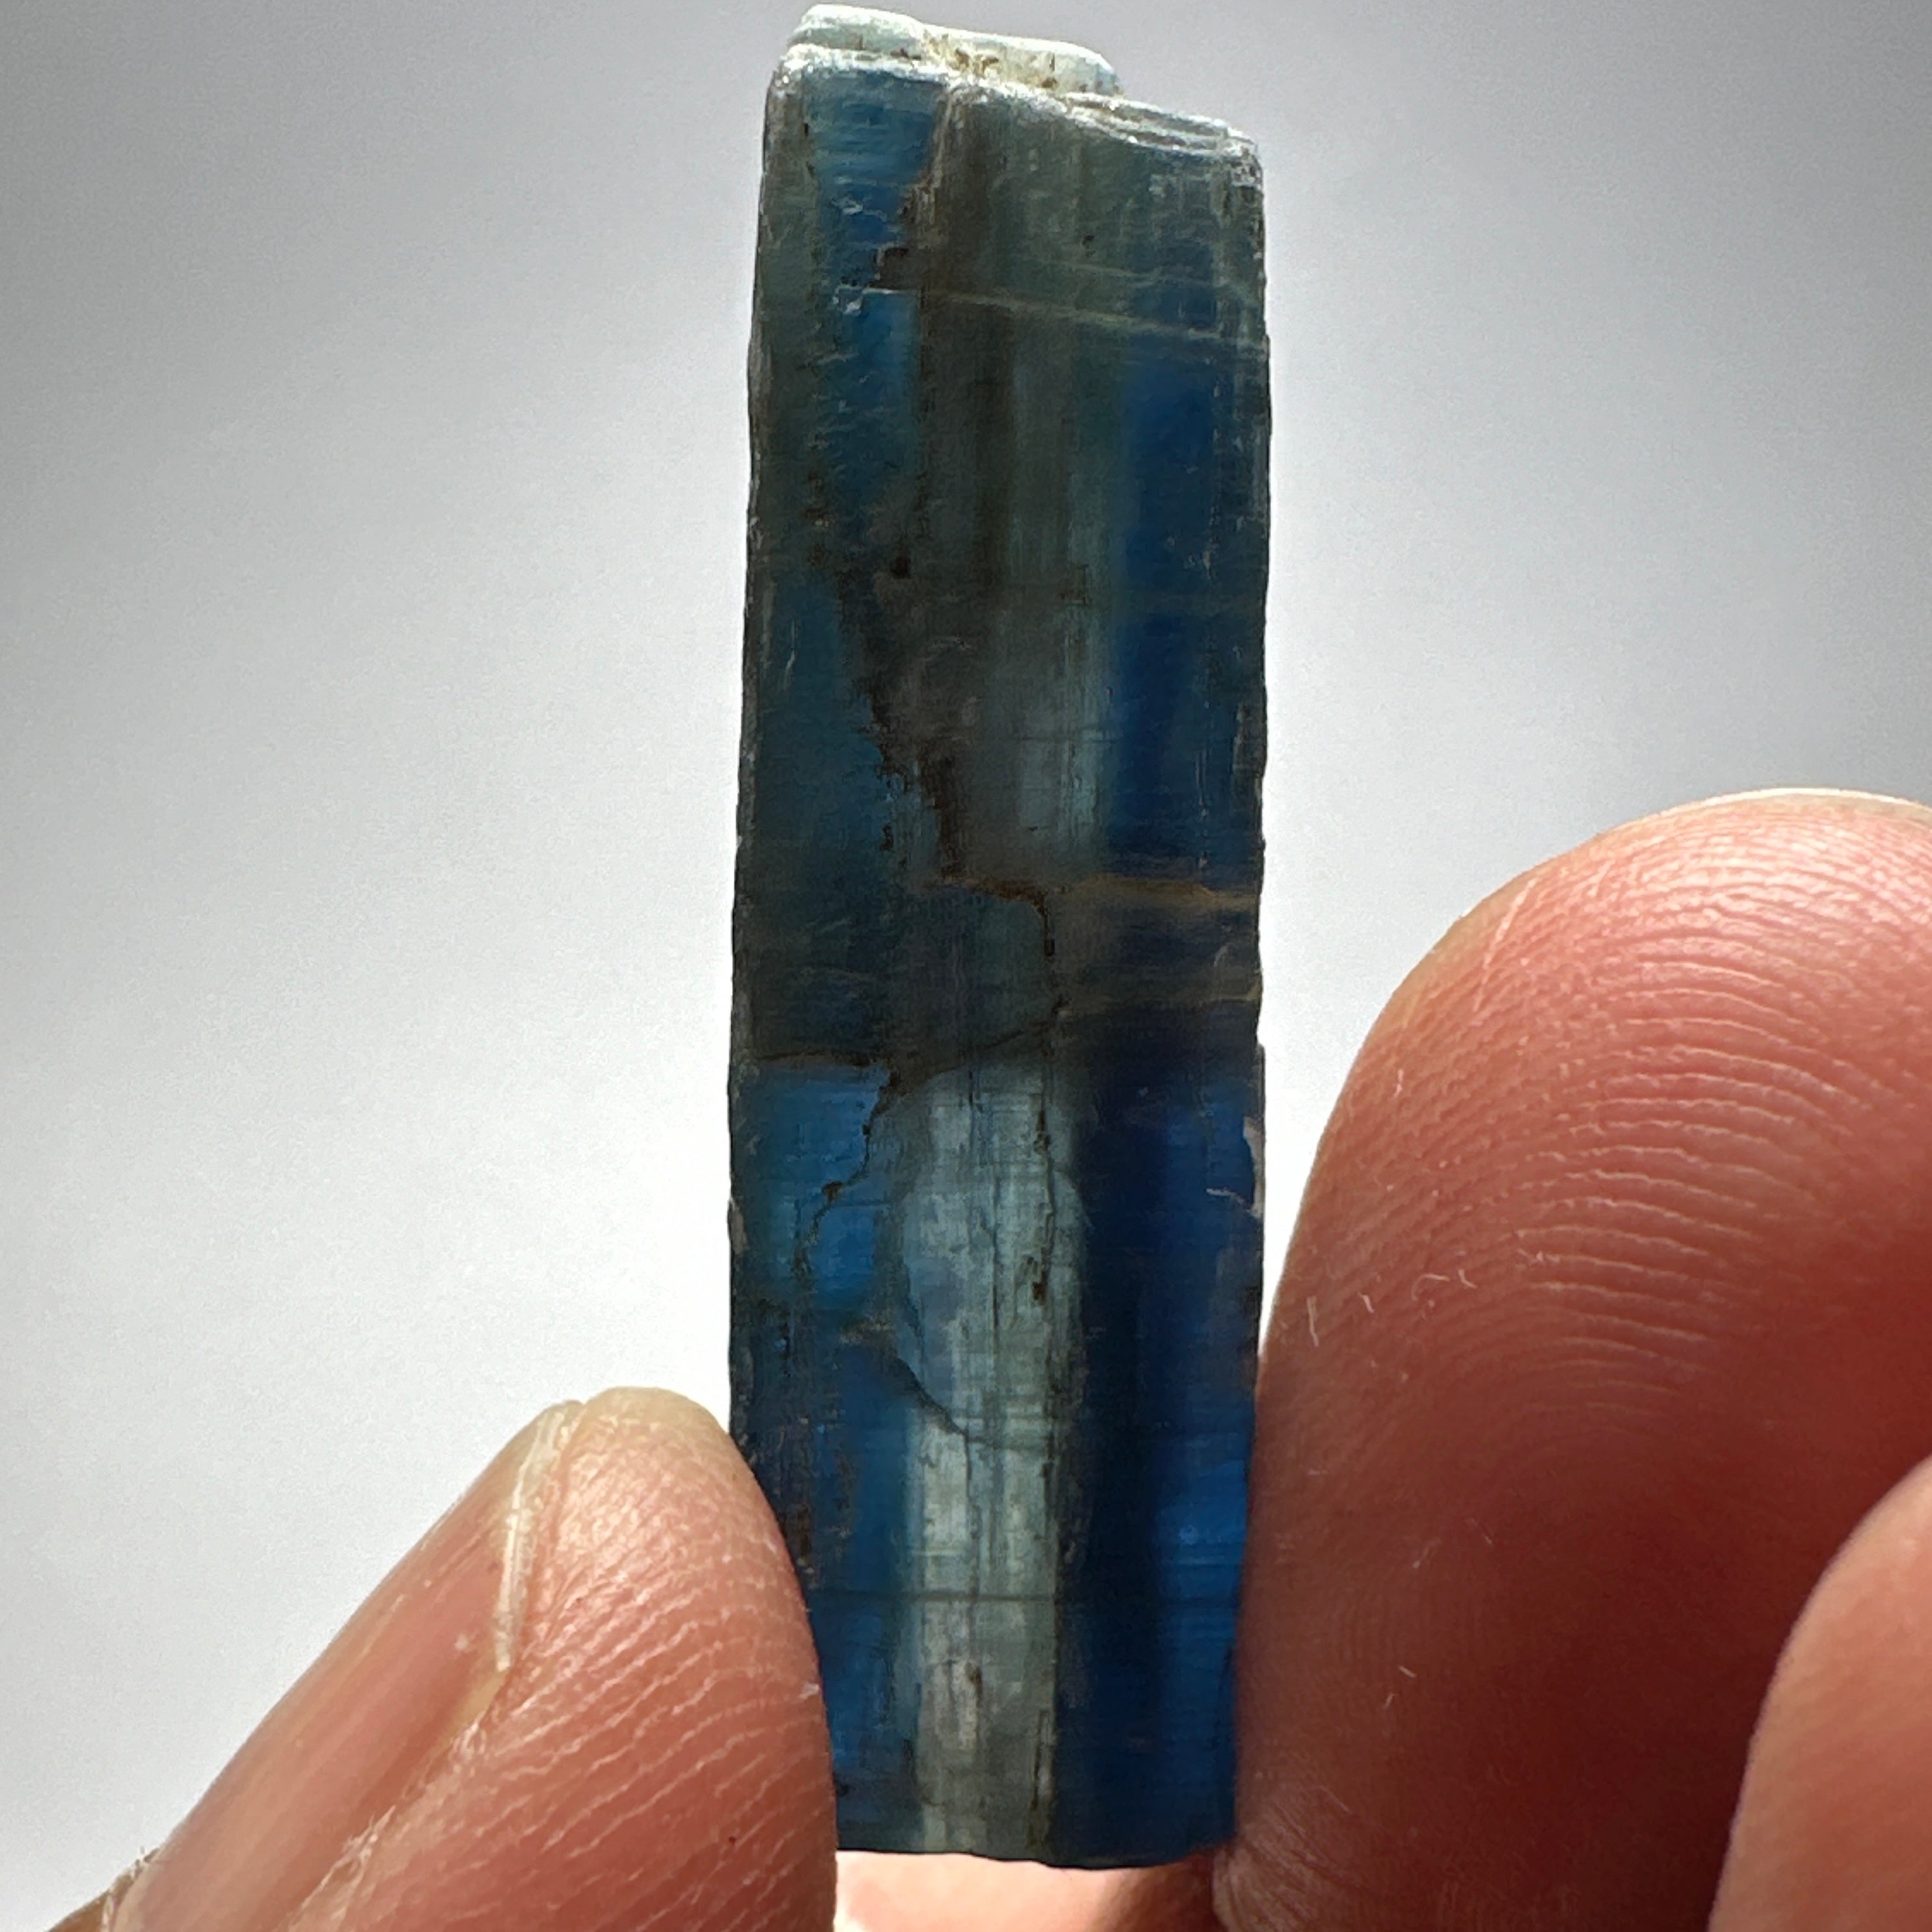 41.95ct Blue Kyanite Crystal, Kenya, Untreated Unheated